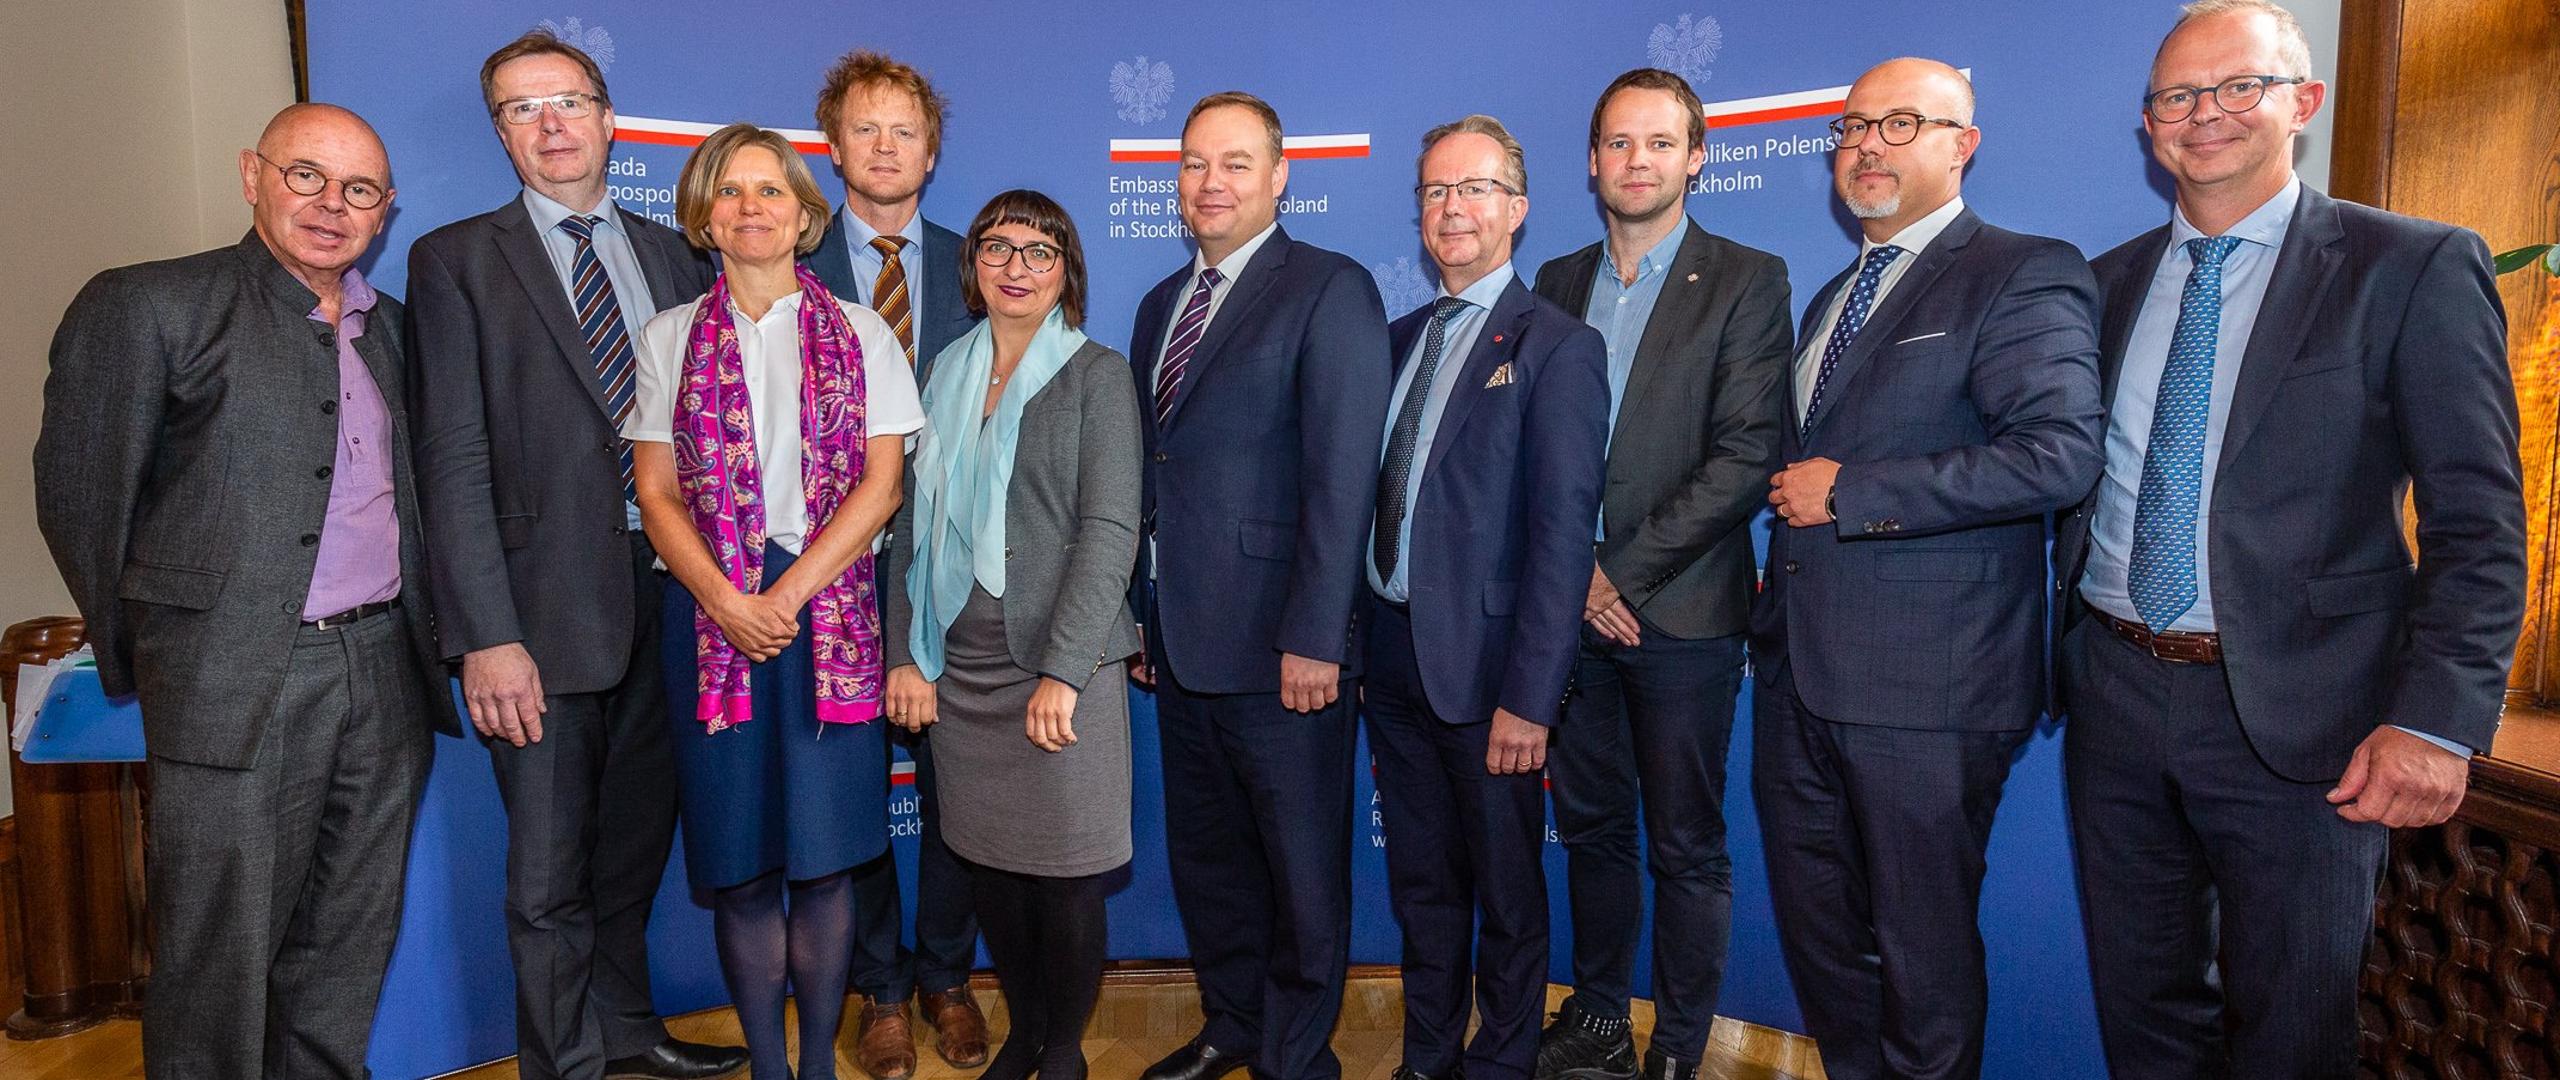 Polsko-skandynawska współpraca energetyczna tematem spotkania w Sztokholmie. Fot. Ministerstwo Energii